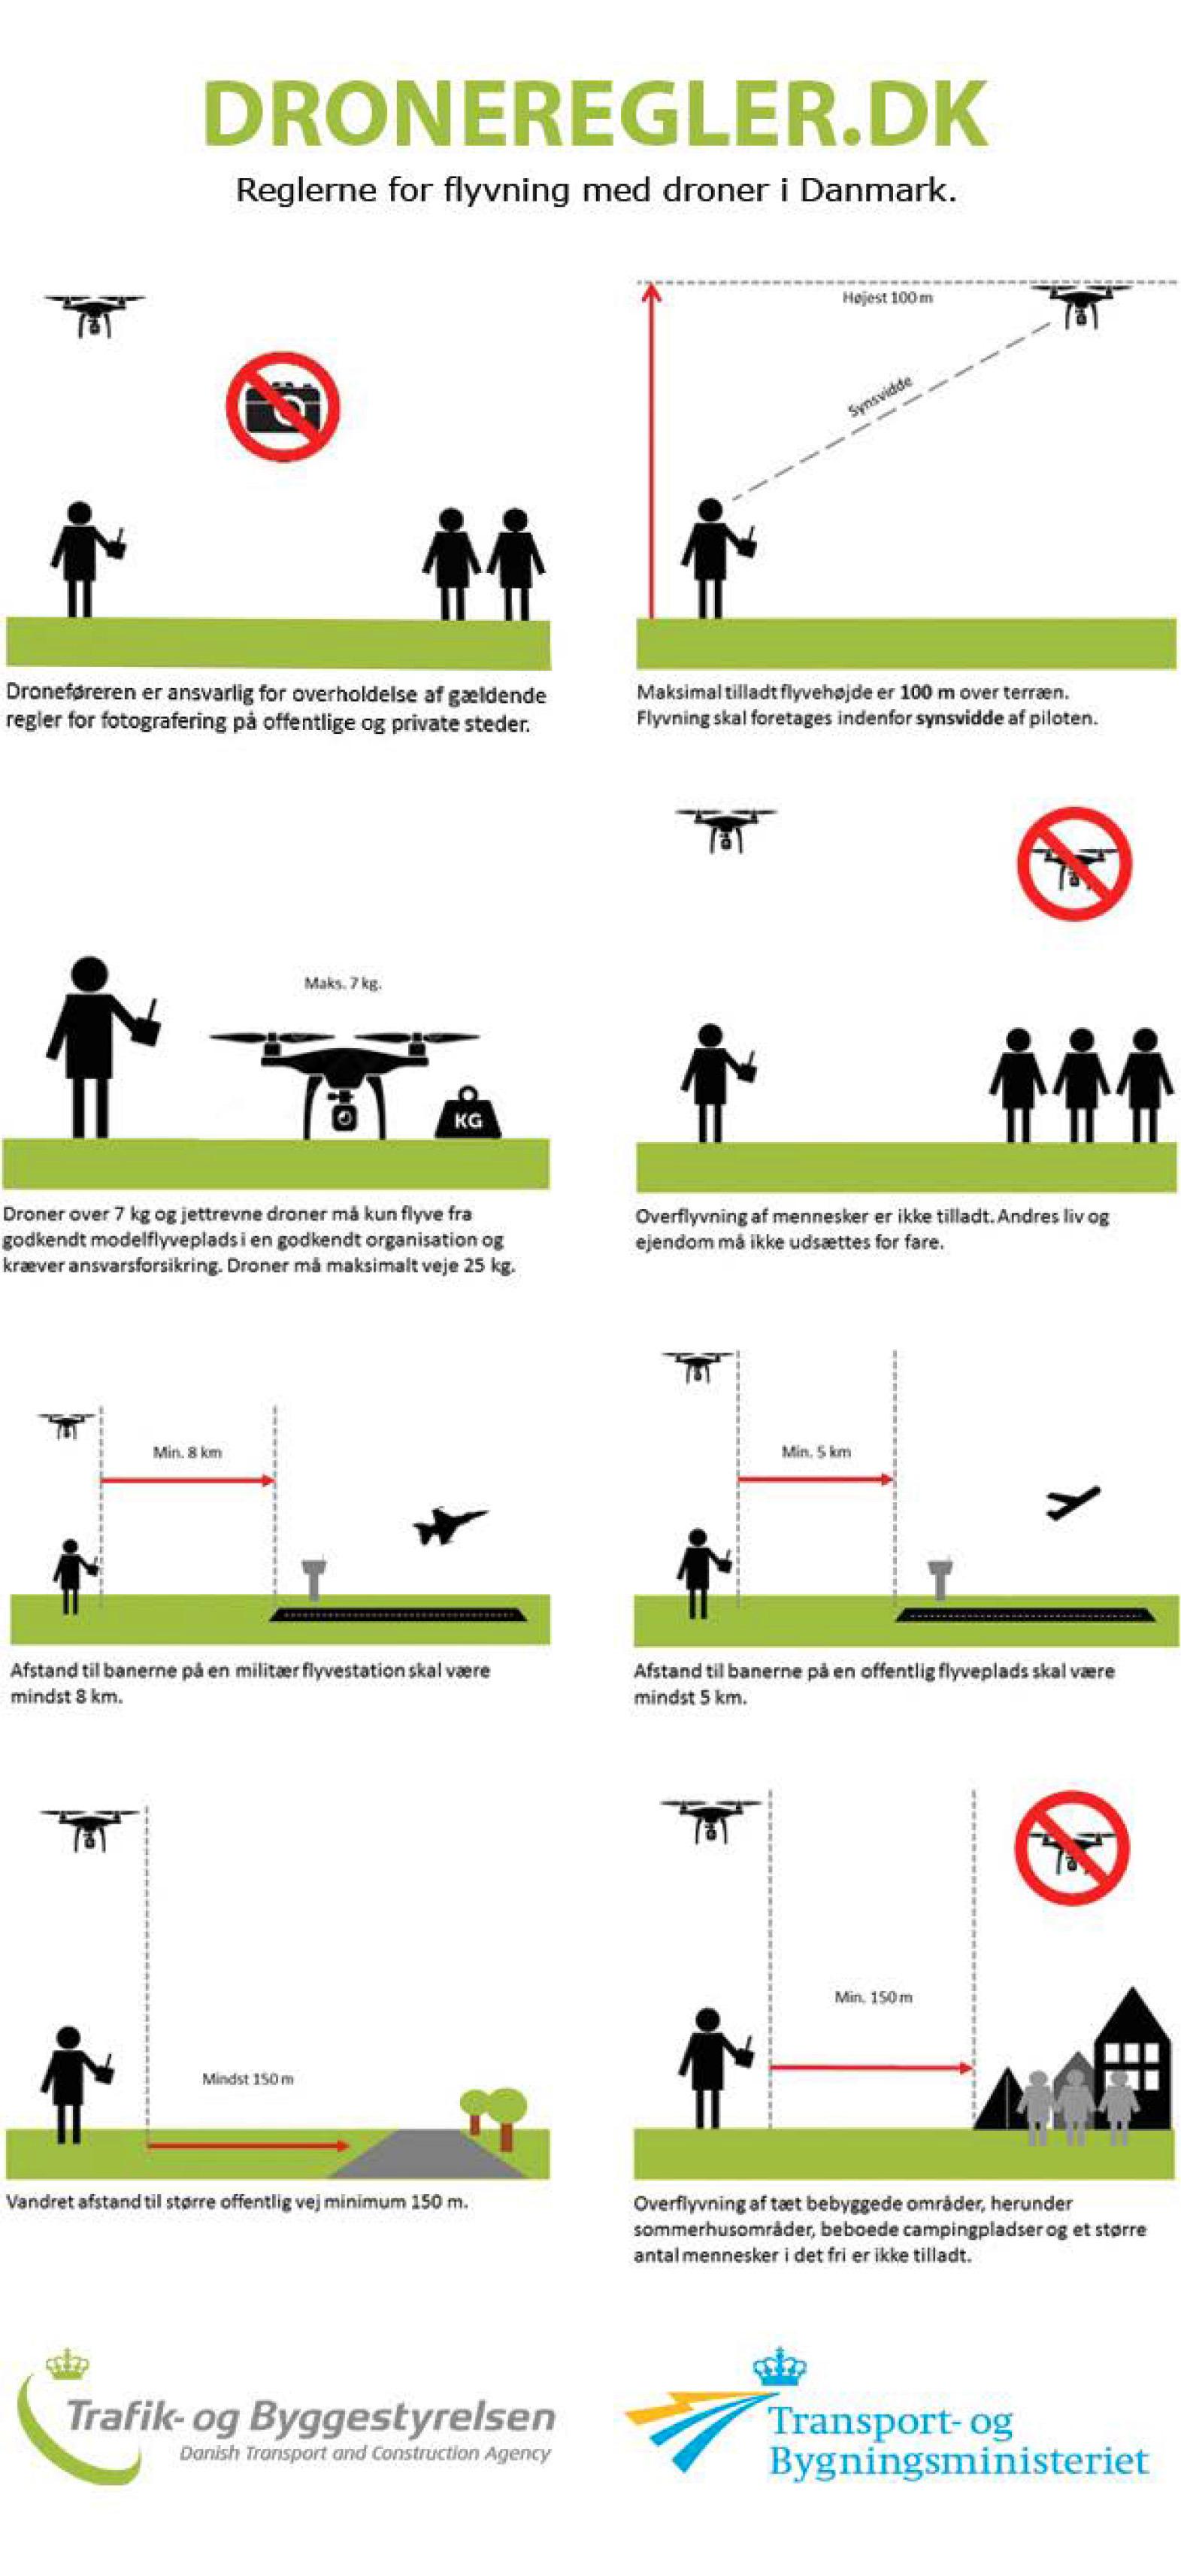 Danske Lufttartsstyrelsens plakat med droneregler, et eksempel til etterfølgelse, mener Samferdselsdepartementet.